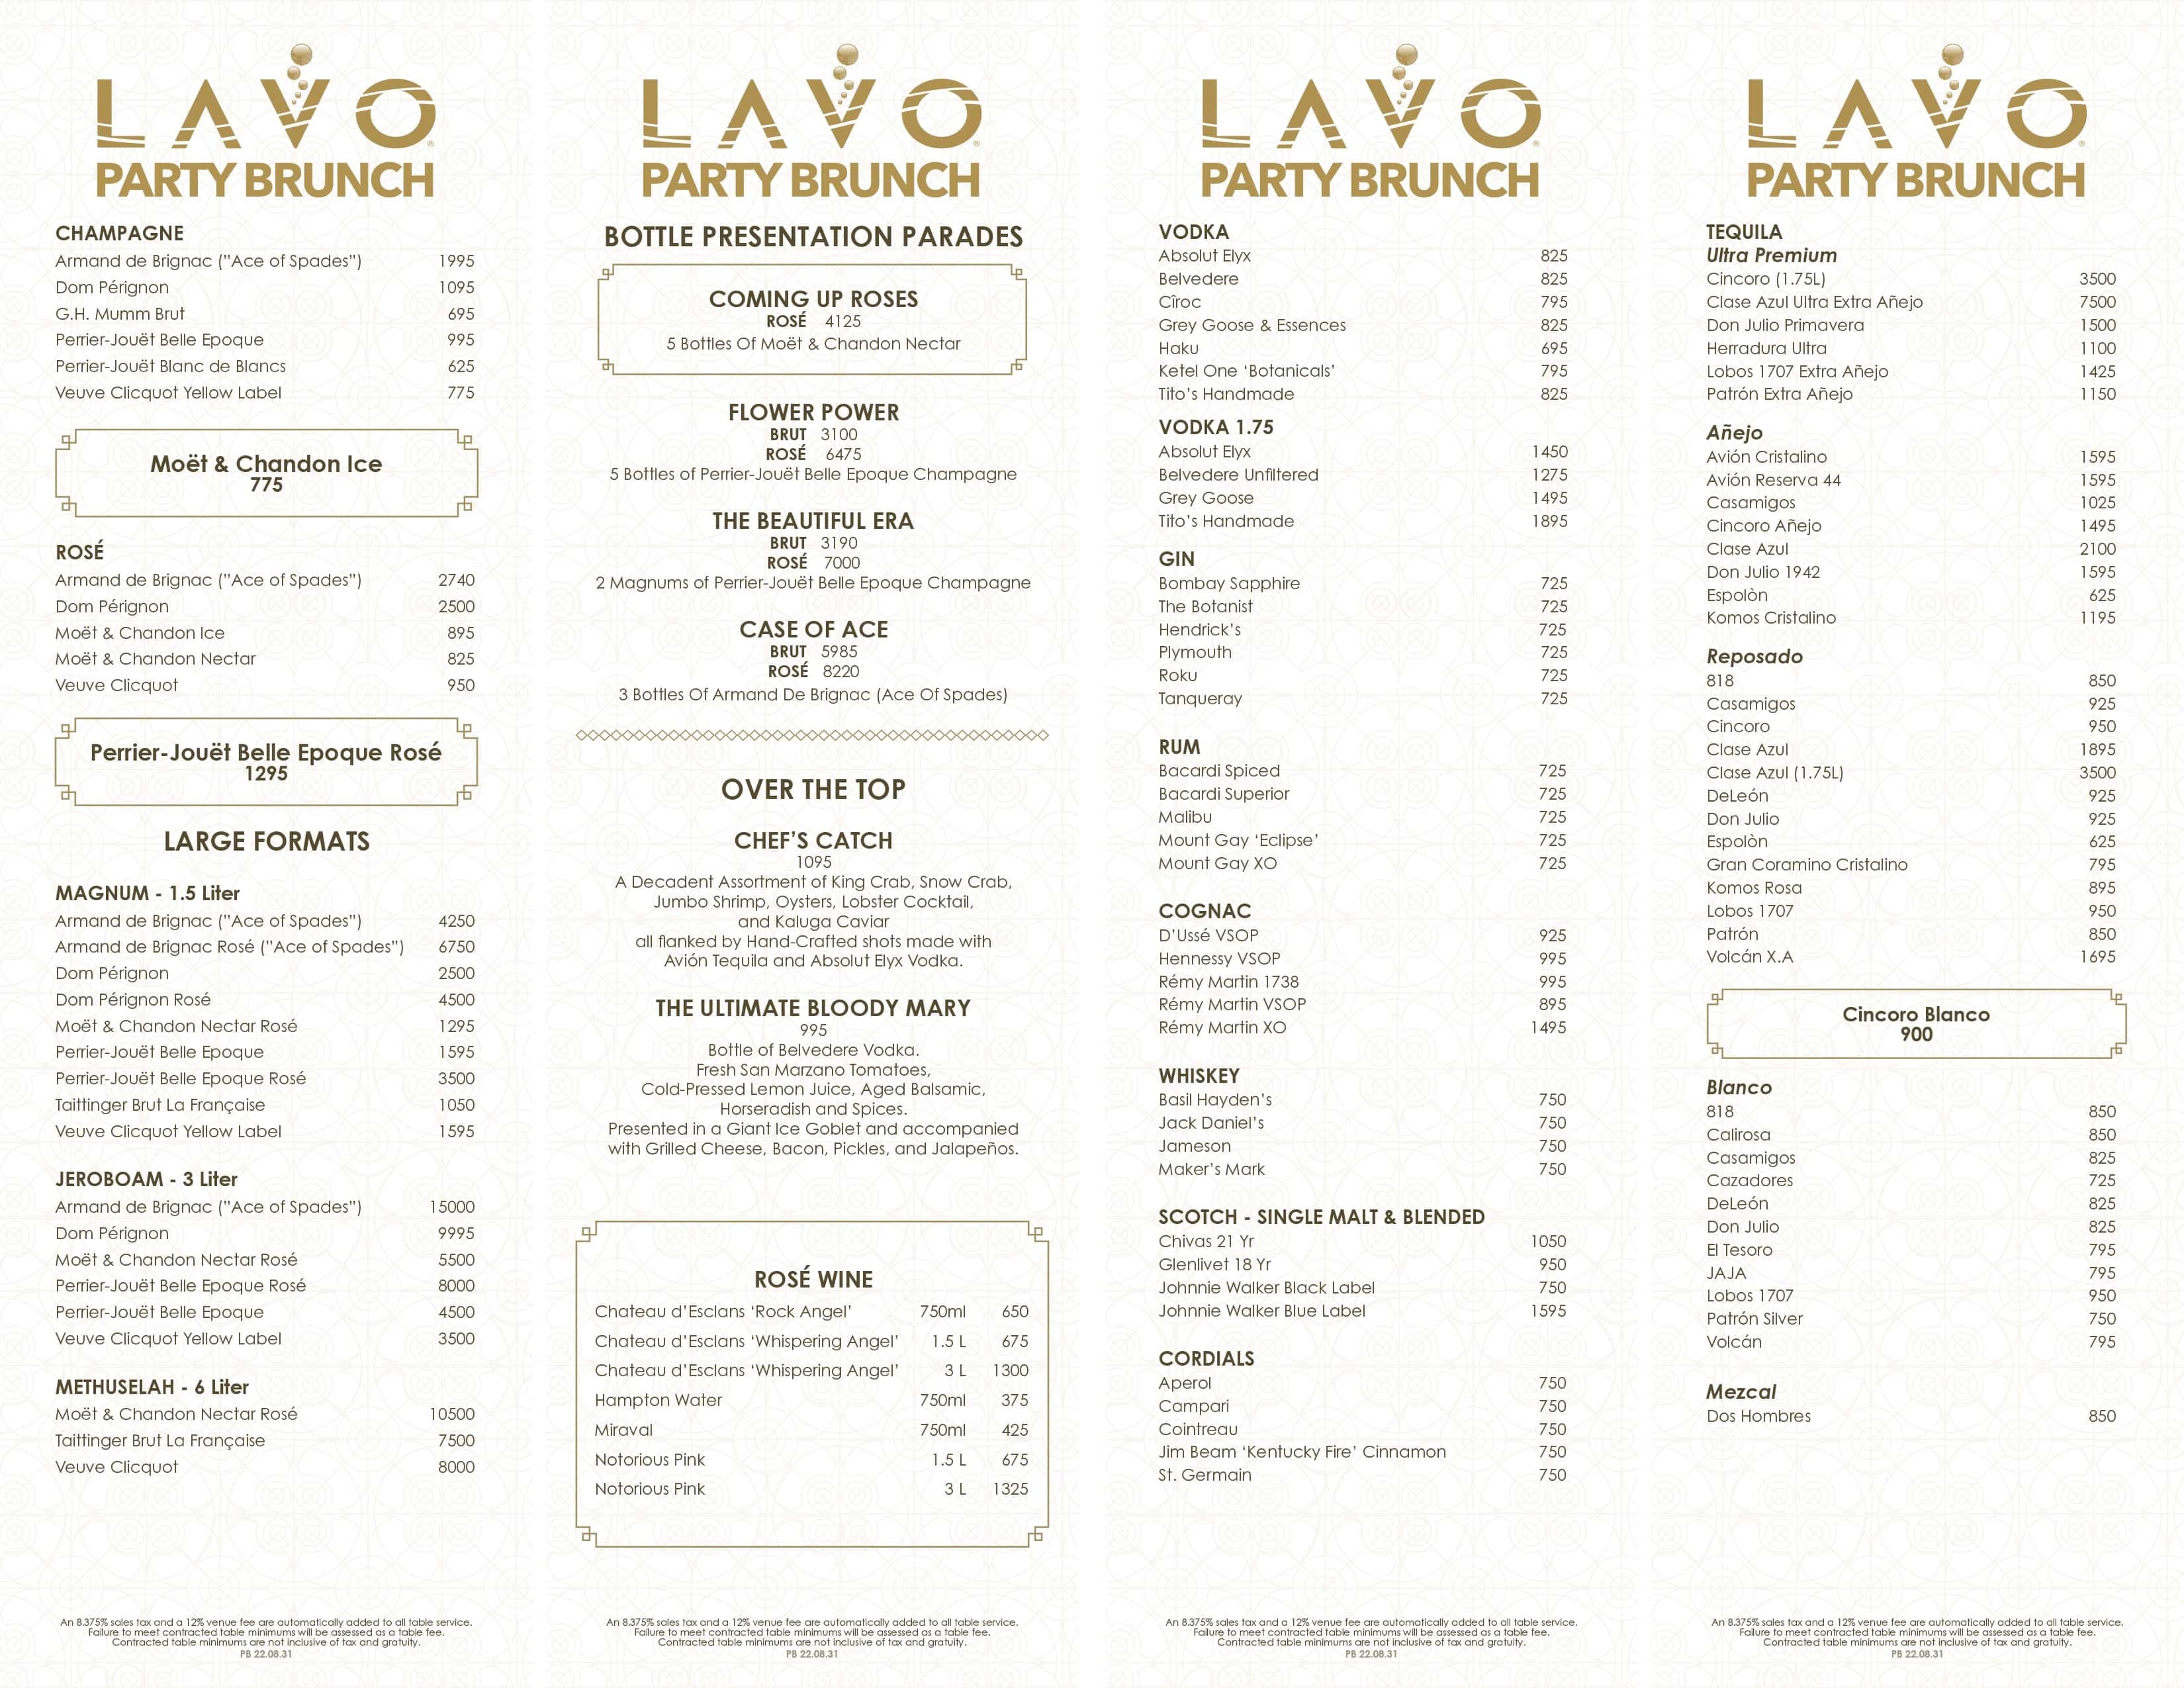 Lavo Party Brunch bottle service menu